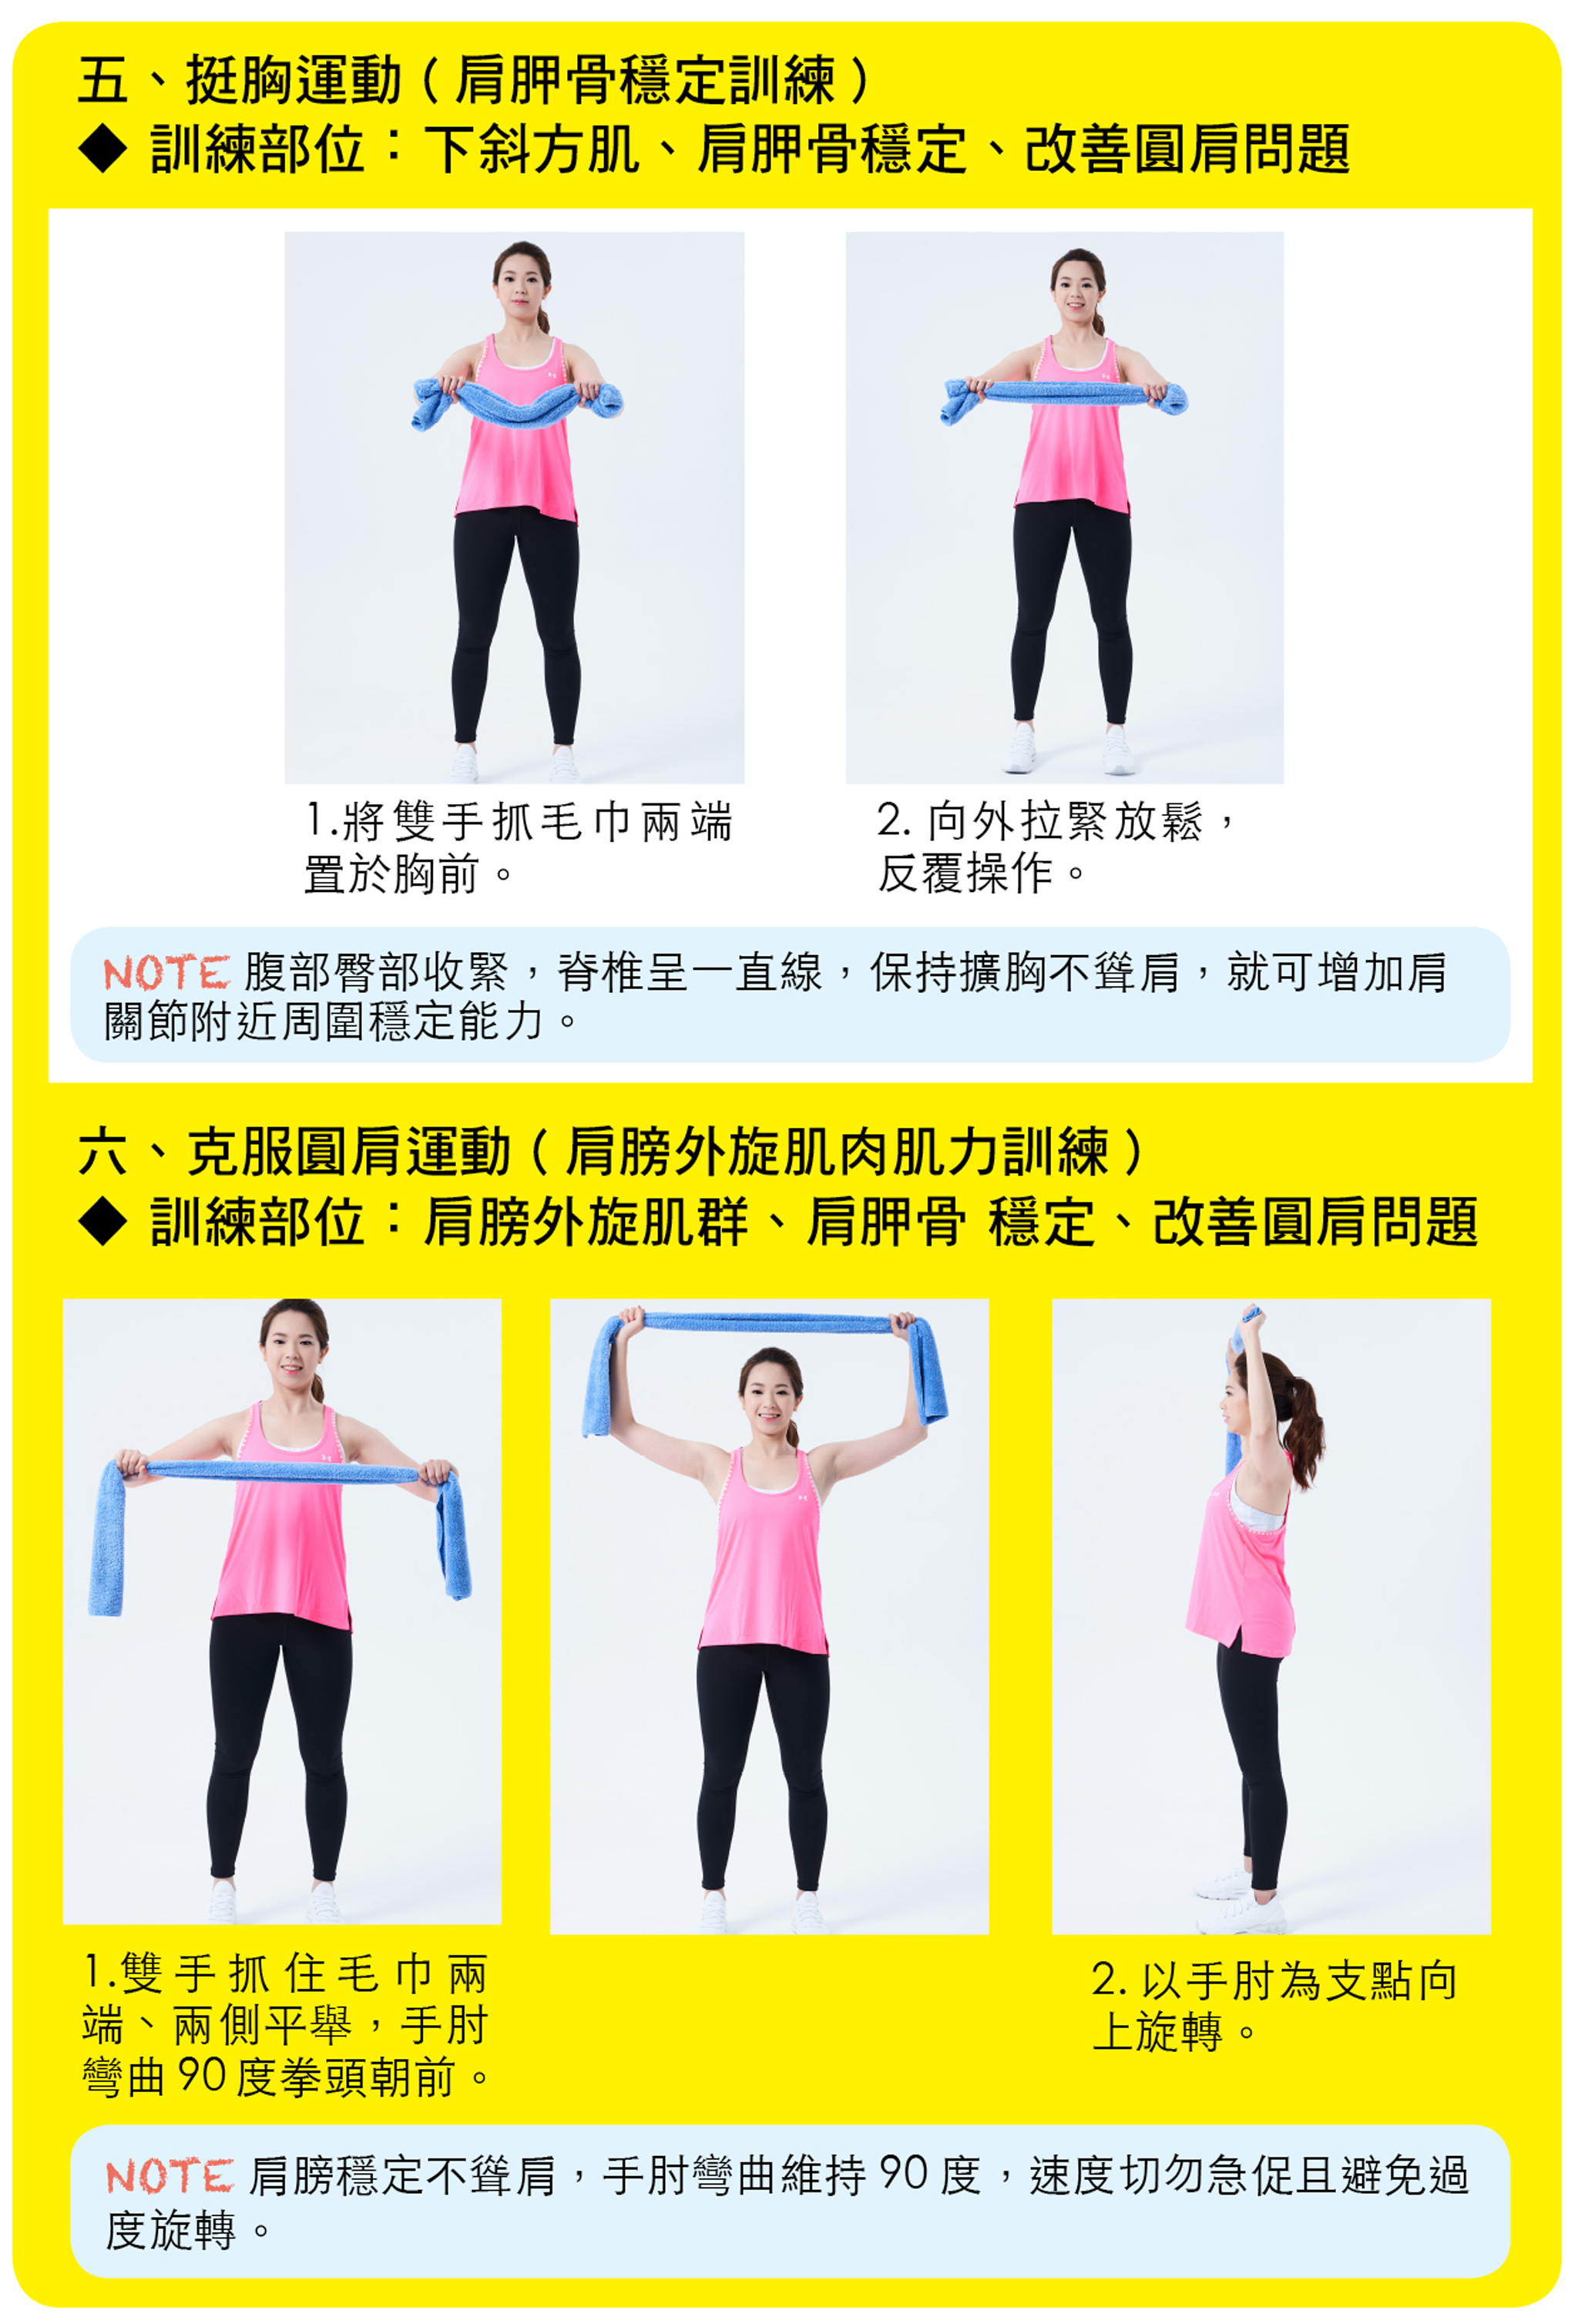 挺胸運動（肩胛骨穩定訓練）、克服圓肩運動（肩膀外旋肌肉肌力訓練）。